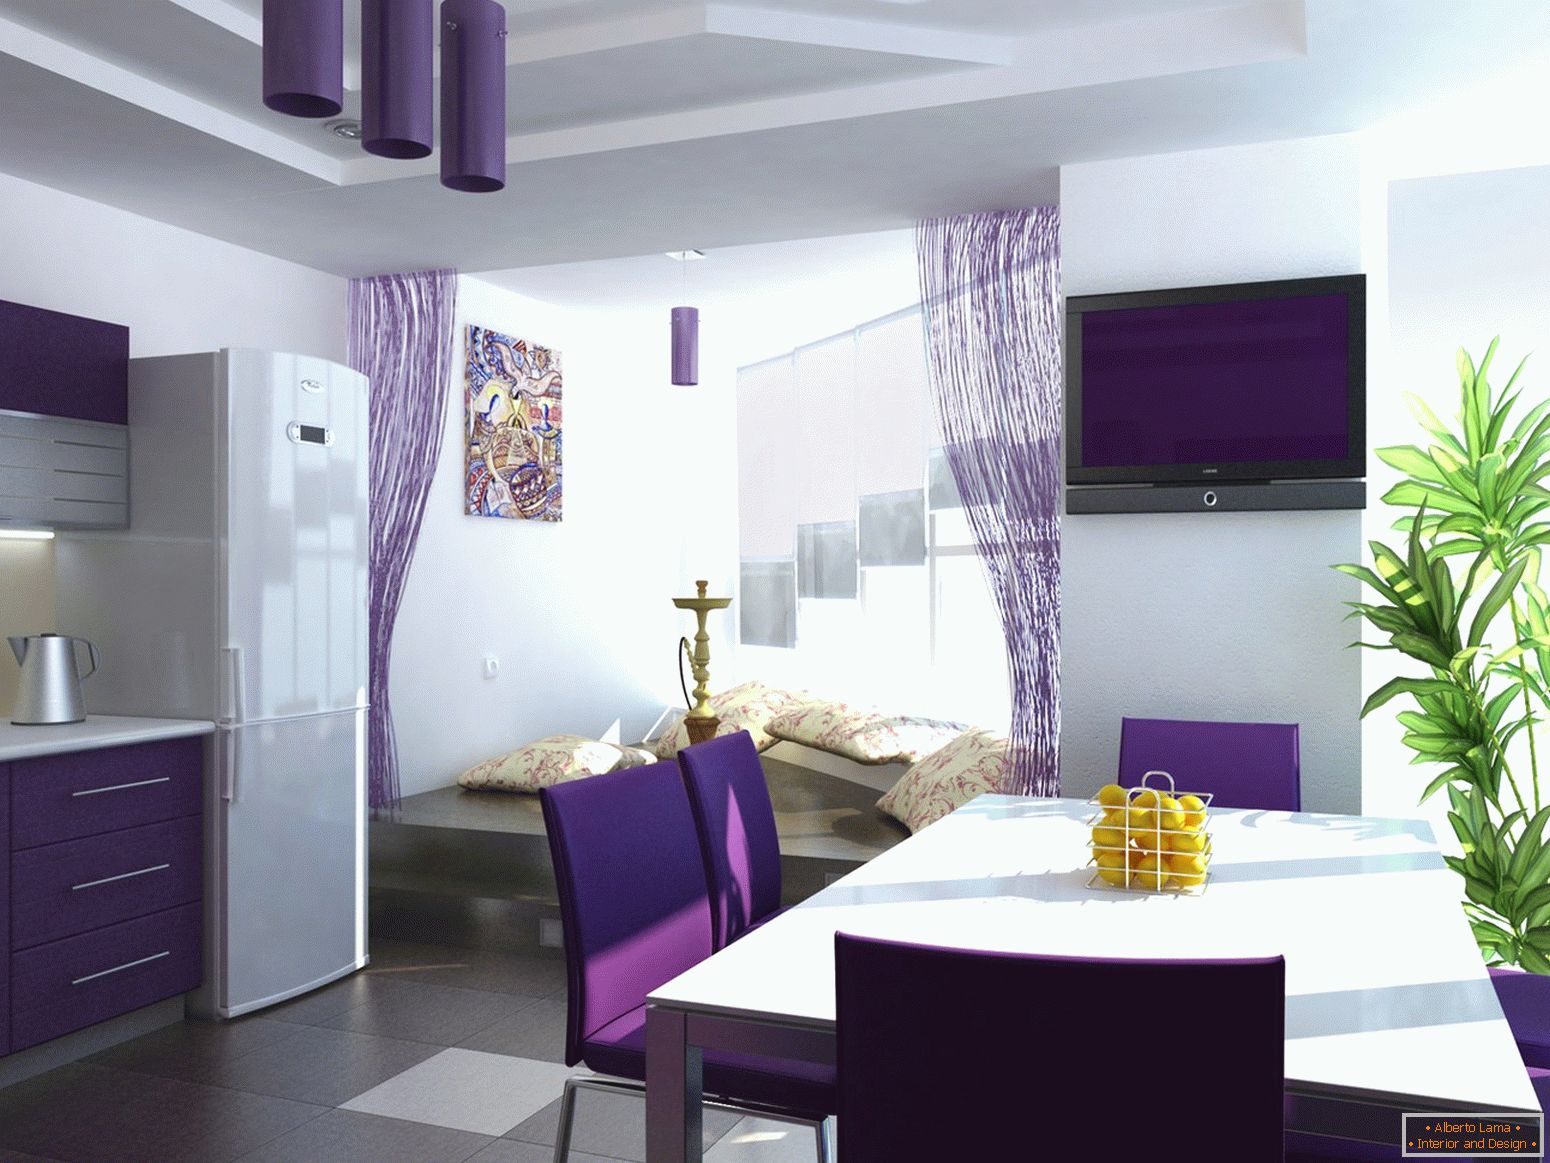 Rideaux violettes dans la cuisine